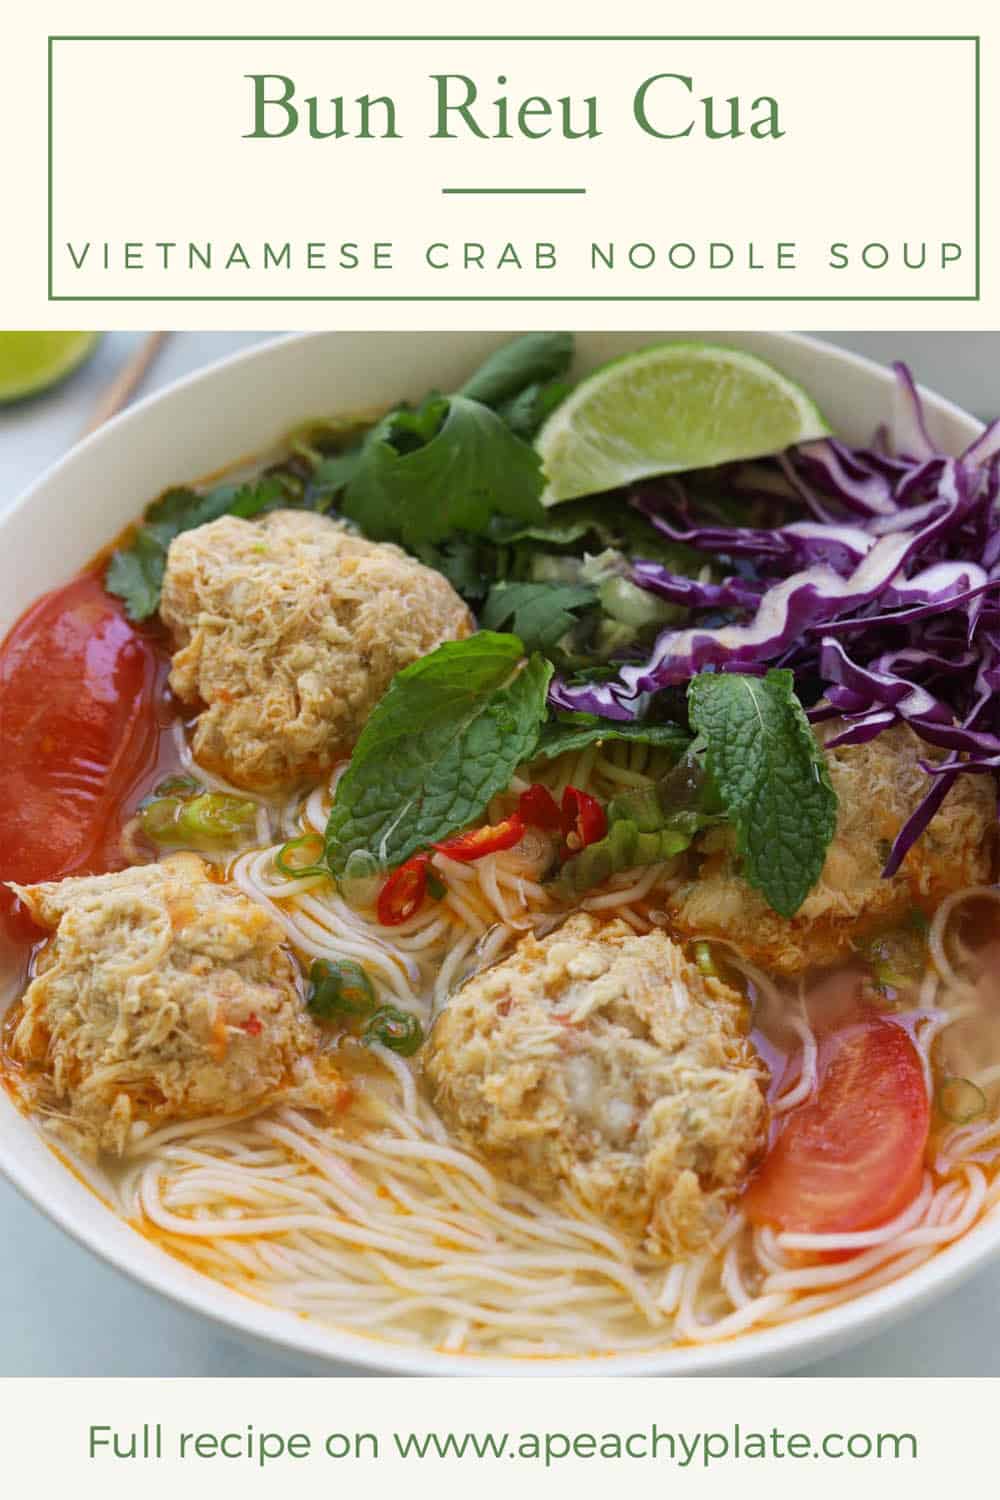 Bun Rieu Cua (Vietnamese Crab Noodle Soup) - A Peachy Plate